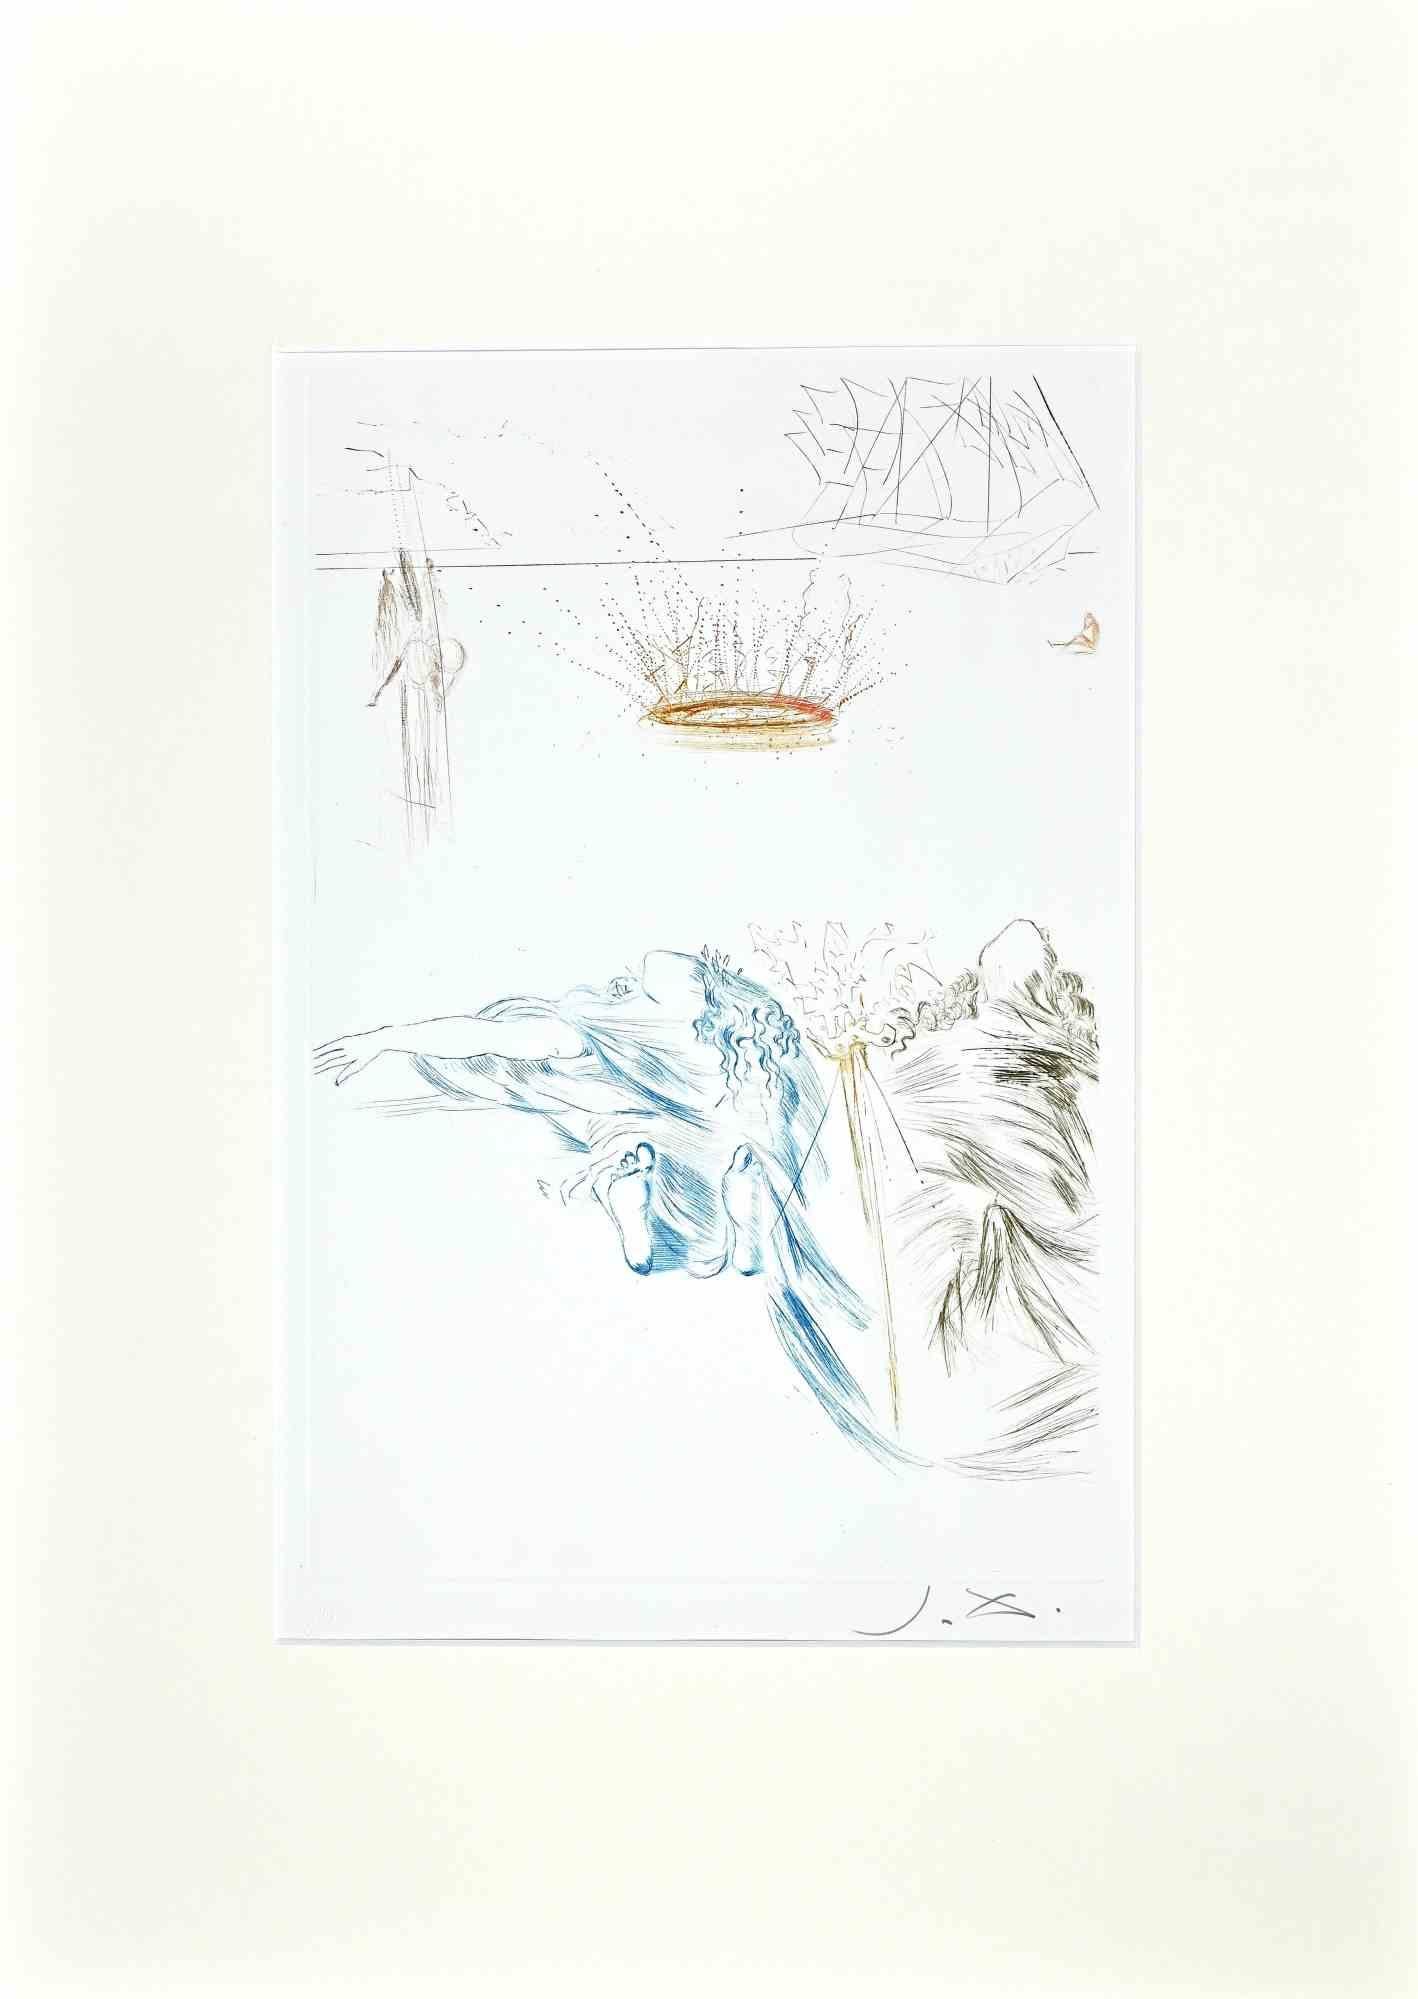 Le Testament de Tristan - Pointe sèche et gravure attr. à S. Dalì - 1969 - Print de Salvador Dalí